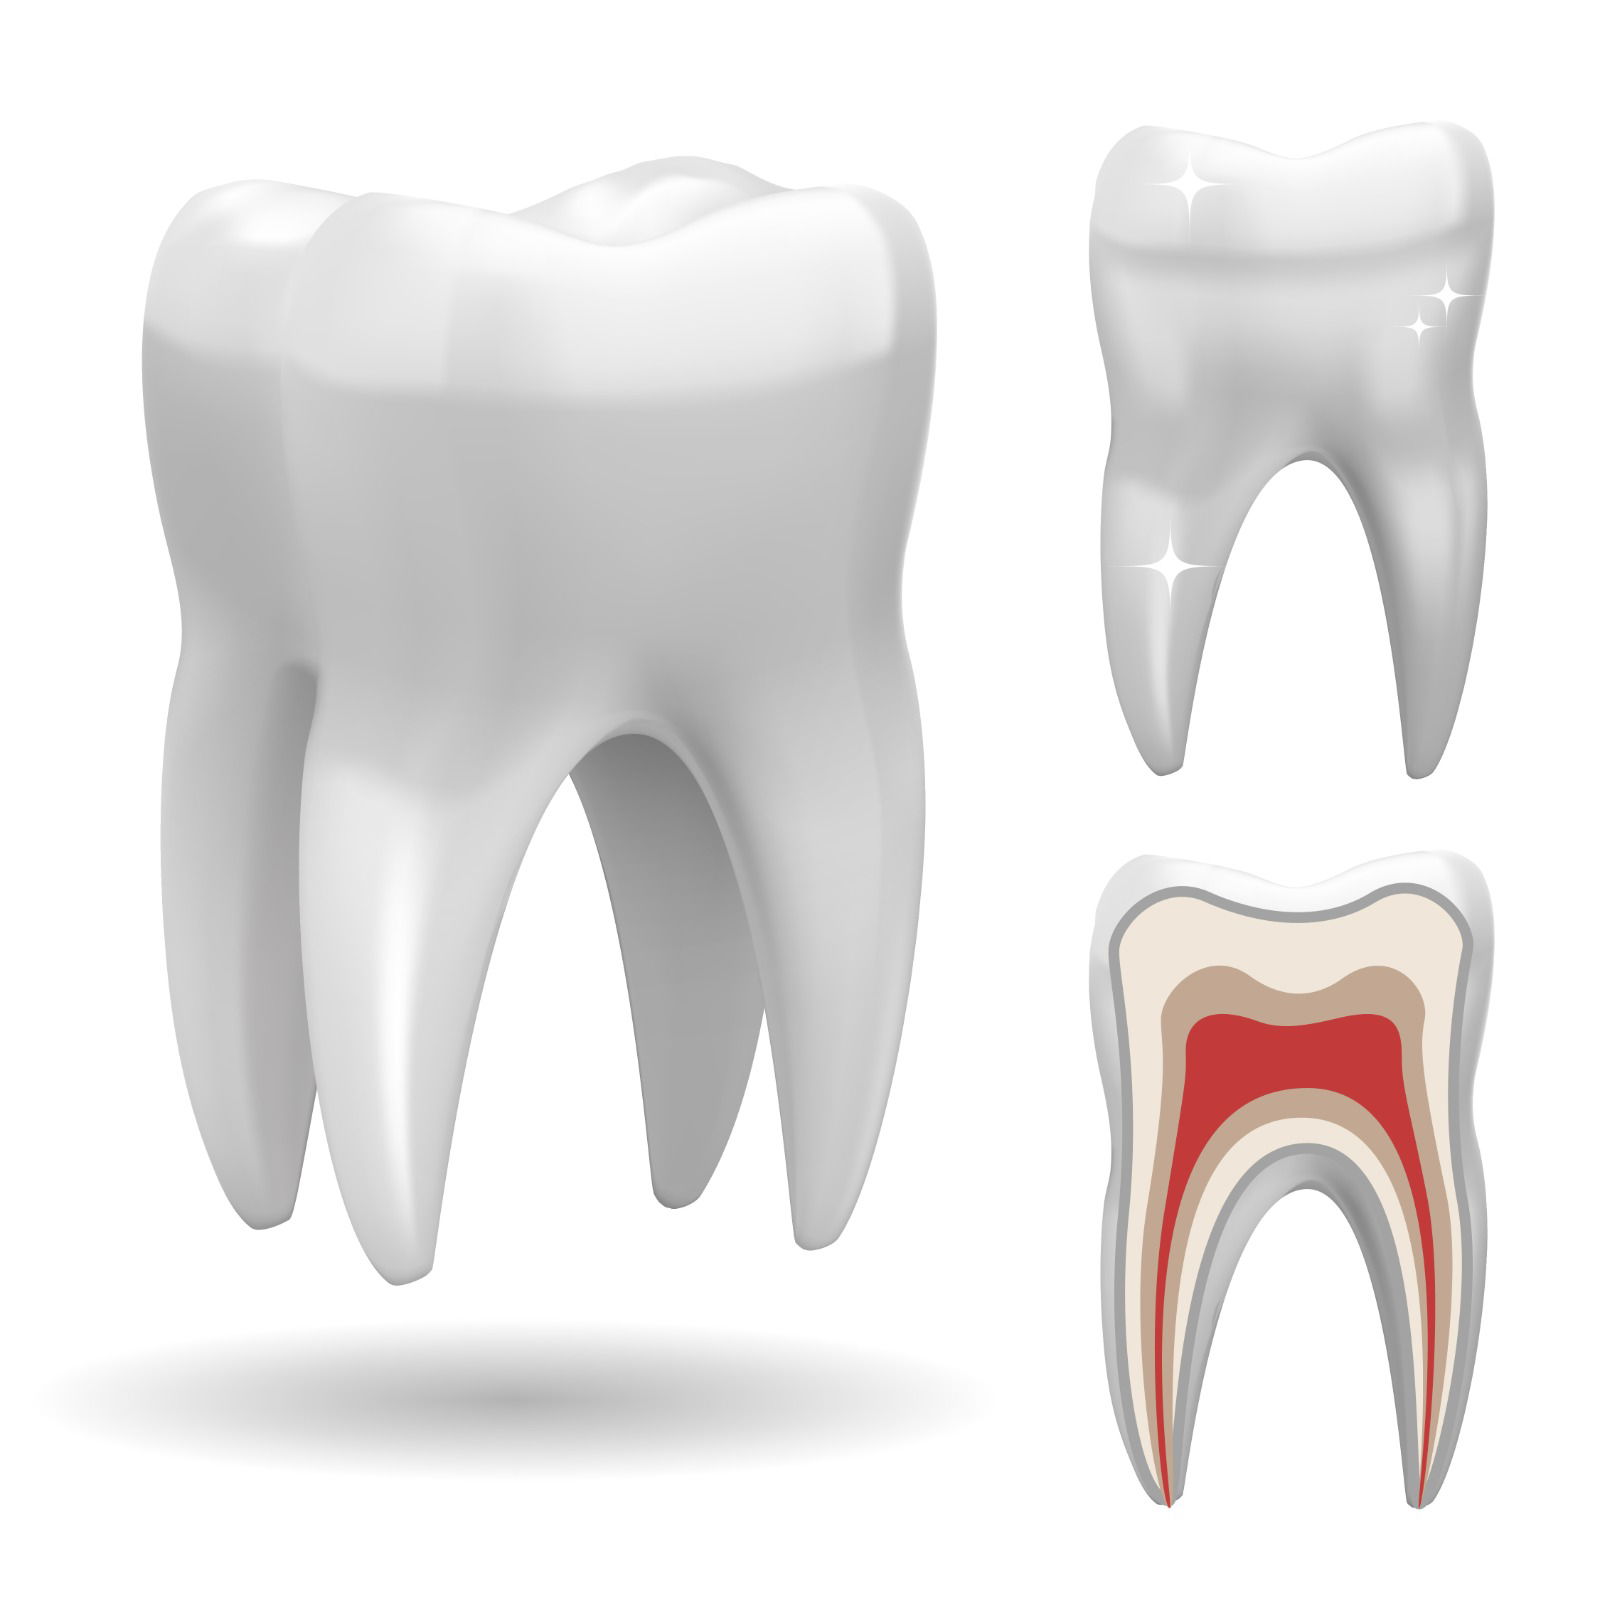 معالجة عصب الأسنان ومتى يكون سحب العصب ضرورياً؟